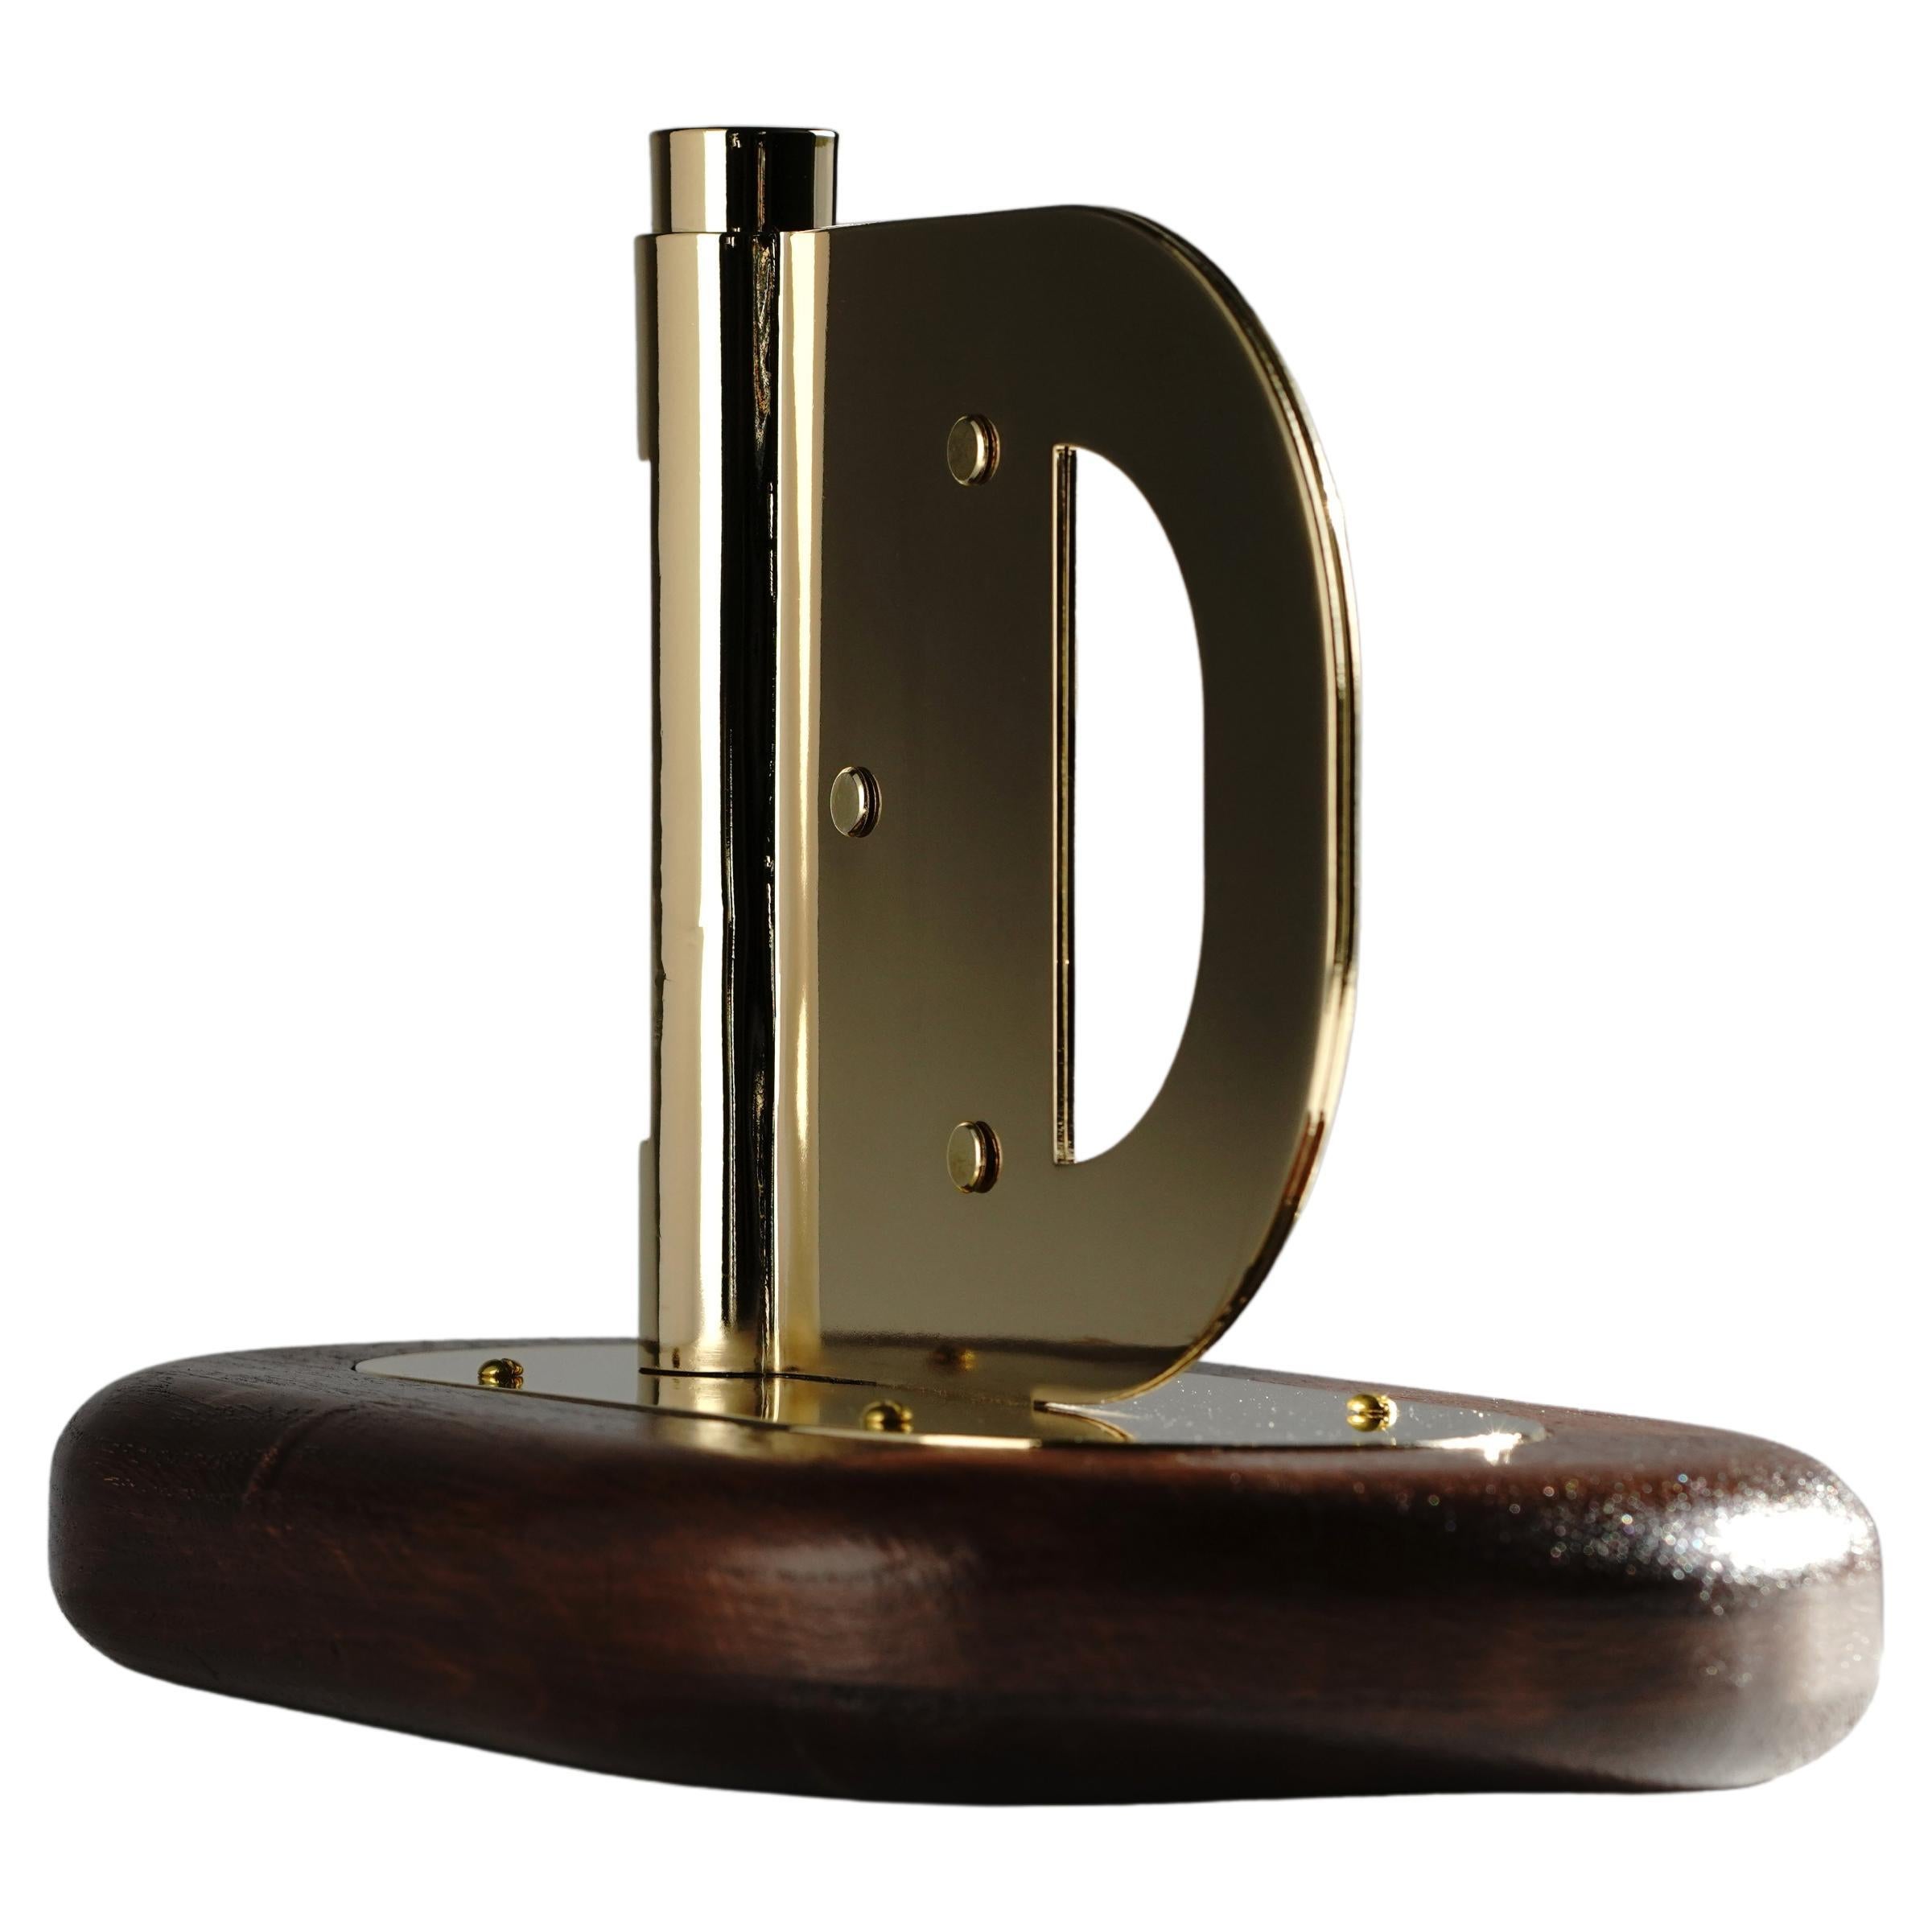 Contemporary Dutch Design Harm De Veer Candleholder brass wood oak handmade For Sale